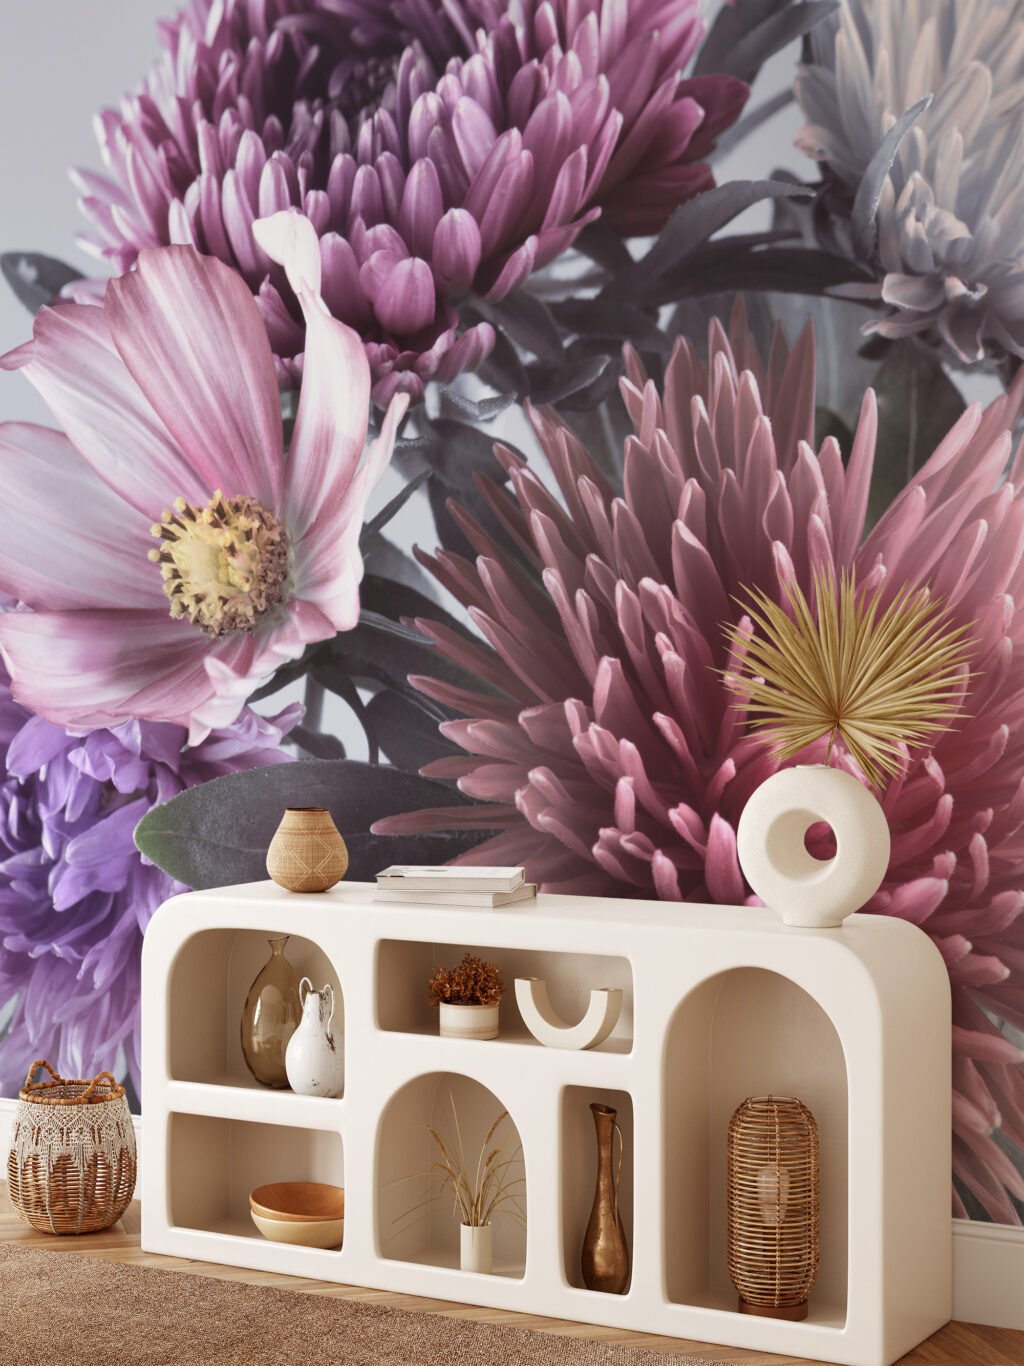 Canlı Büyük Aster Çiçekleri Desenli Duvar Kağıdı, Oturma Odası veya Yatak Odası İçin Renkli ve Etkileyici Çiçekli Duvar Posteri Çiçekli Duvar Kağıtları 6